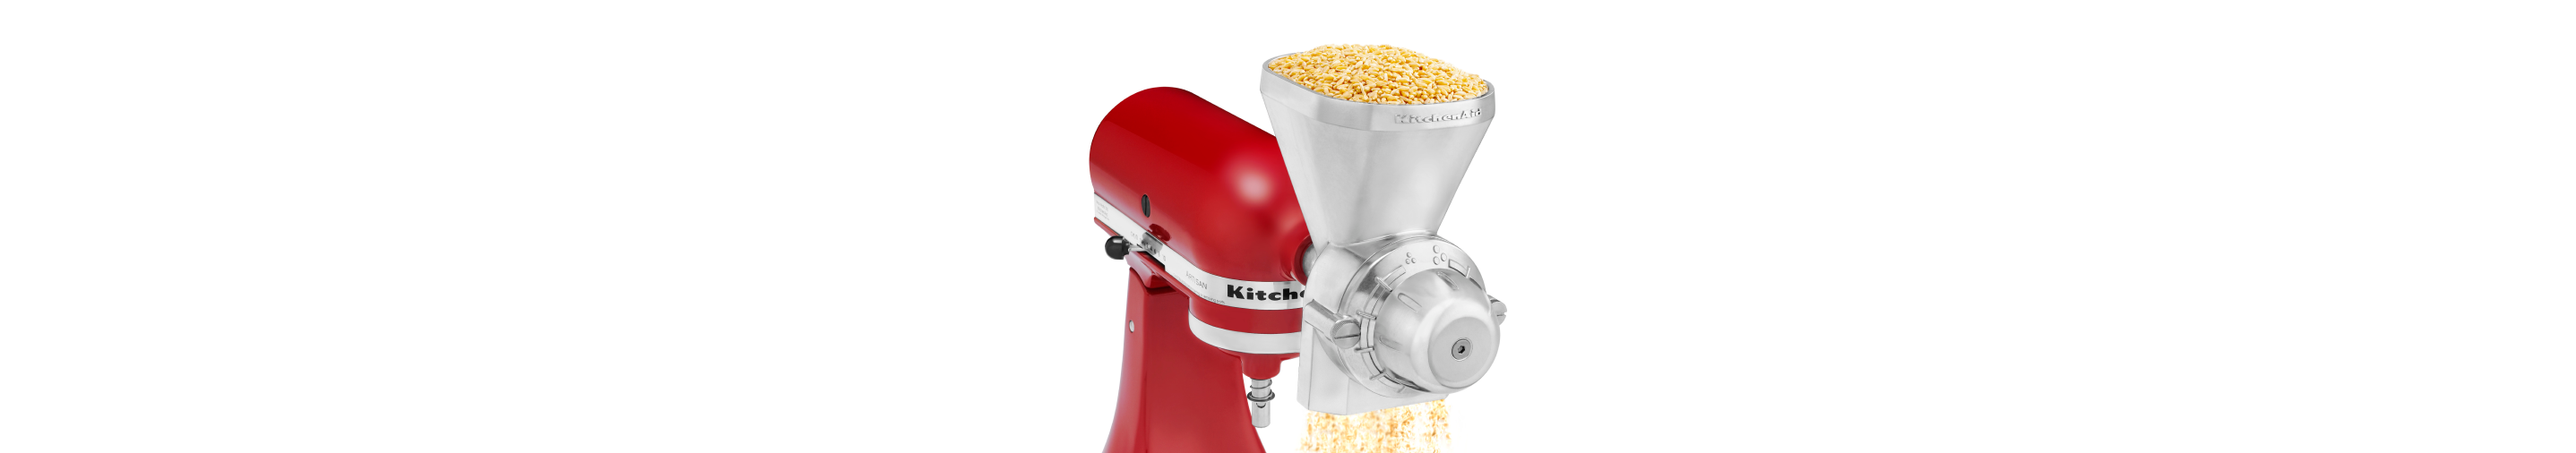 https://kitchenaid-h.assetsadobe.com/is/image/content/dam/business-unit/kitchenaid/en-us/marketing-content/site-assets/page-content/pinch-of-help/milling-flour-at-home/milling-flour-at-home_6.png?fit=constrain&fmt=png-alpha&wid=2875